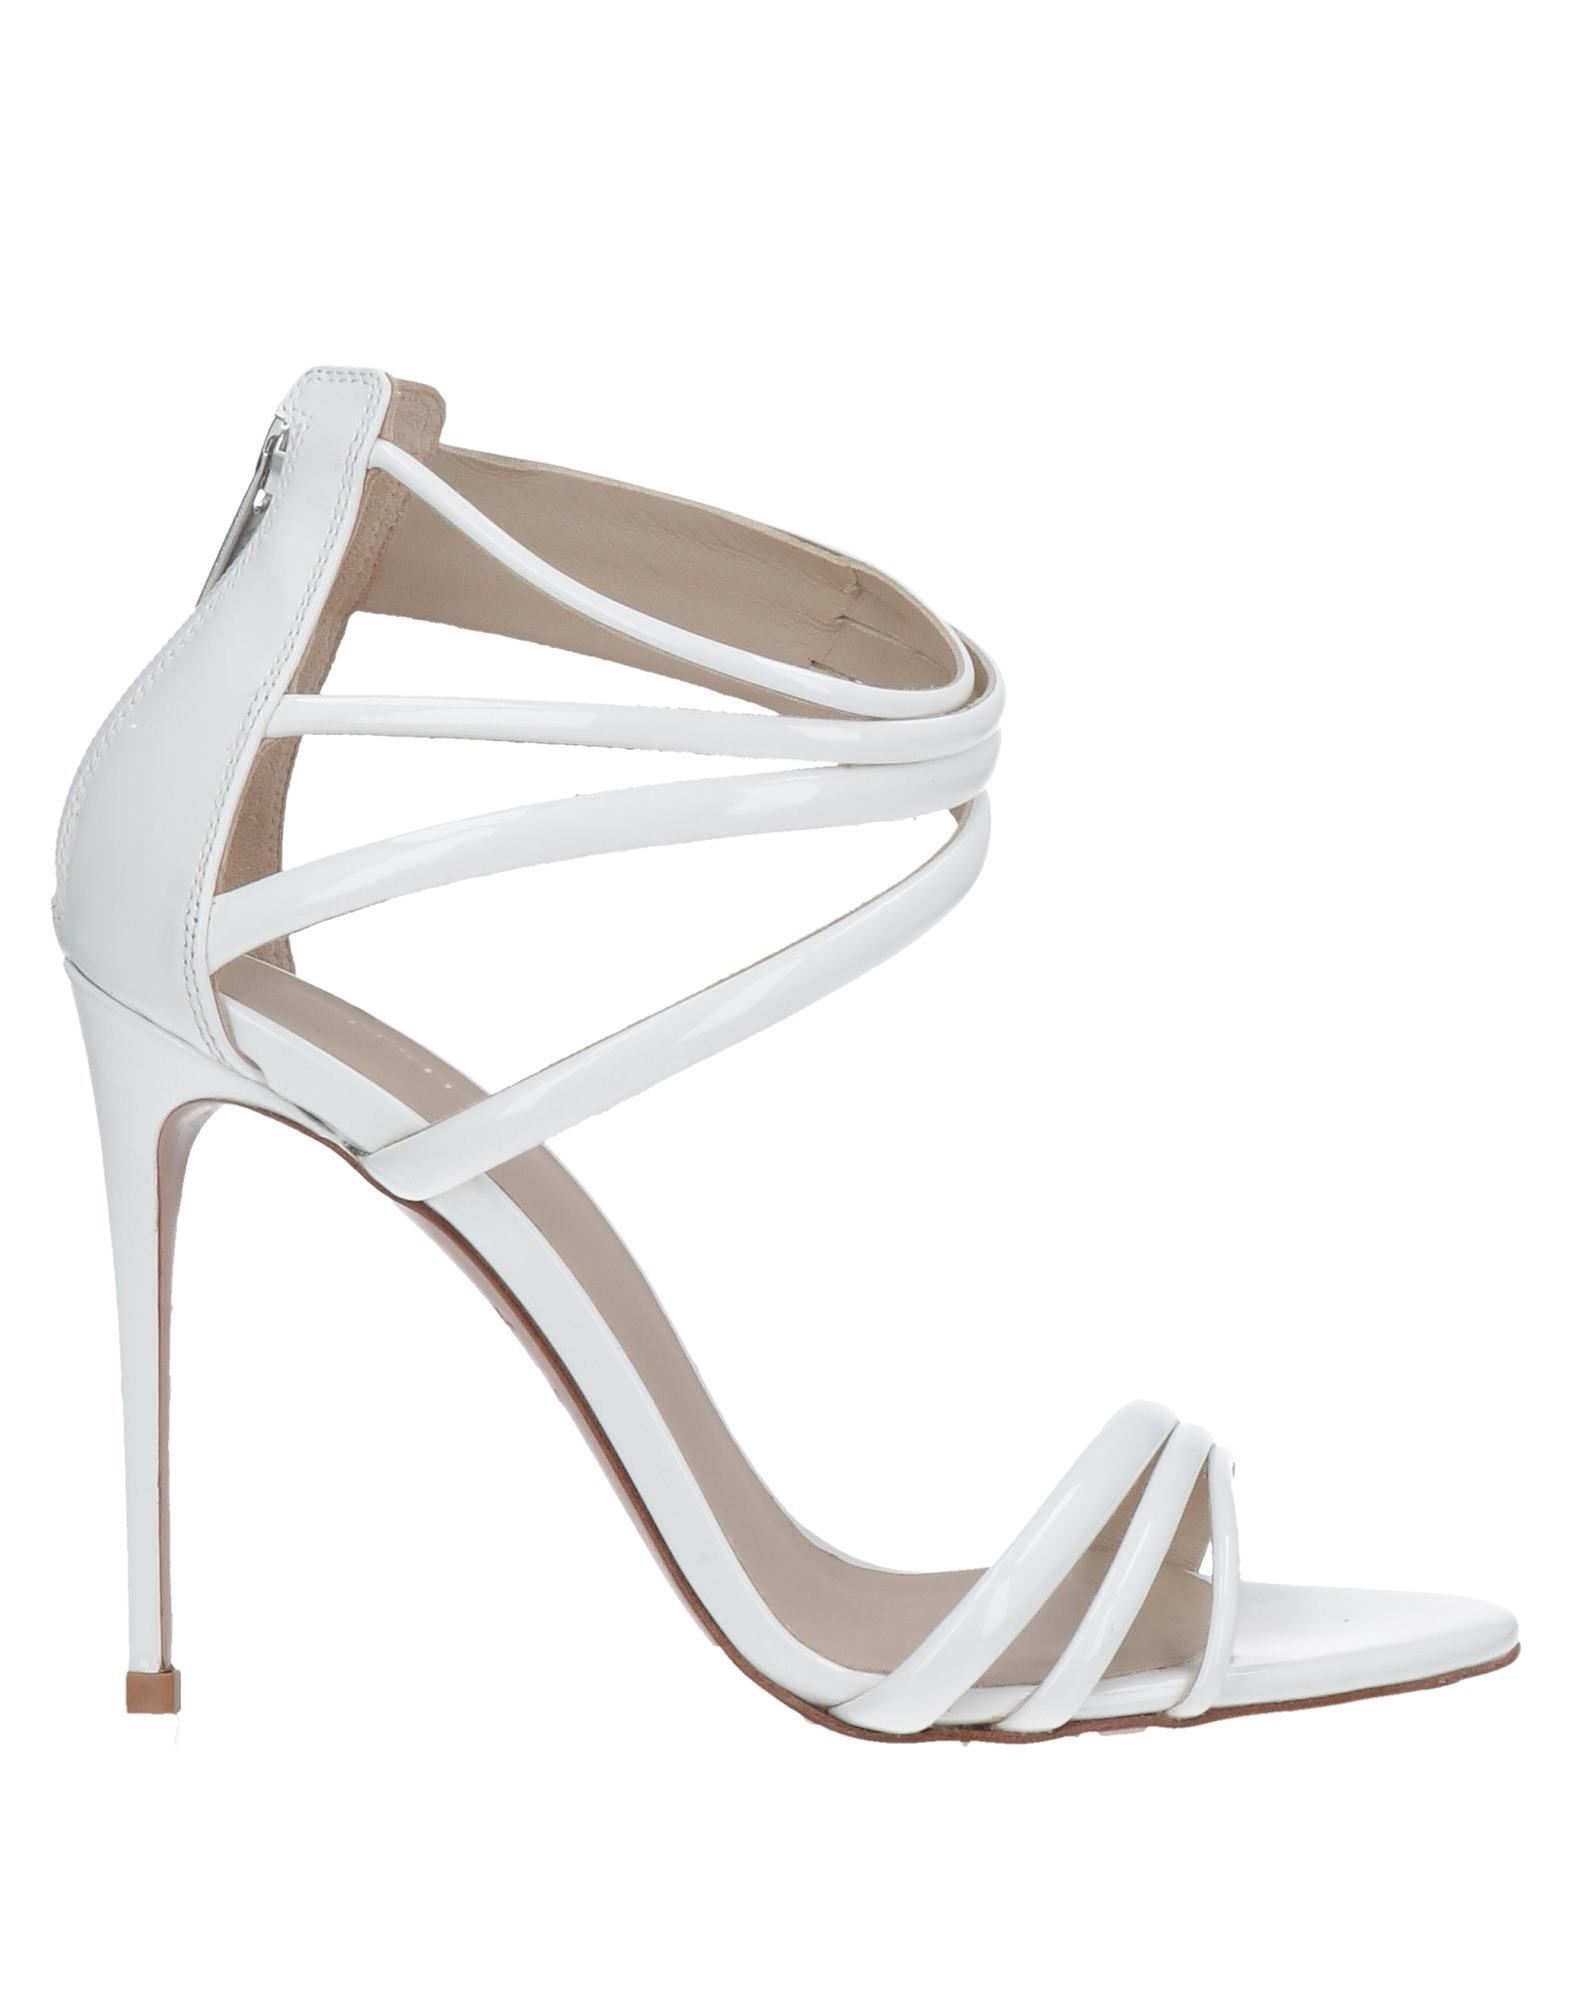 Le Silla Sandals In White